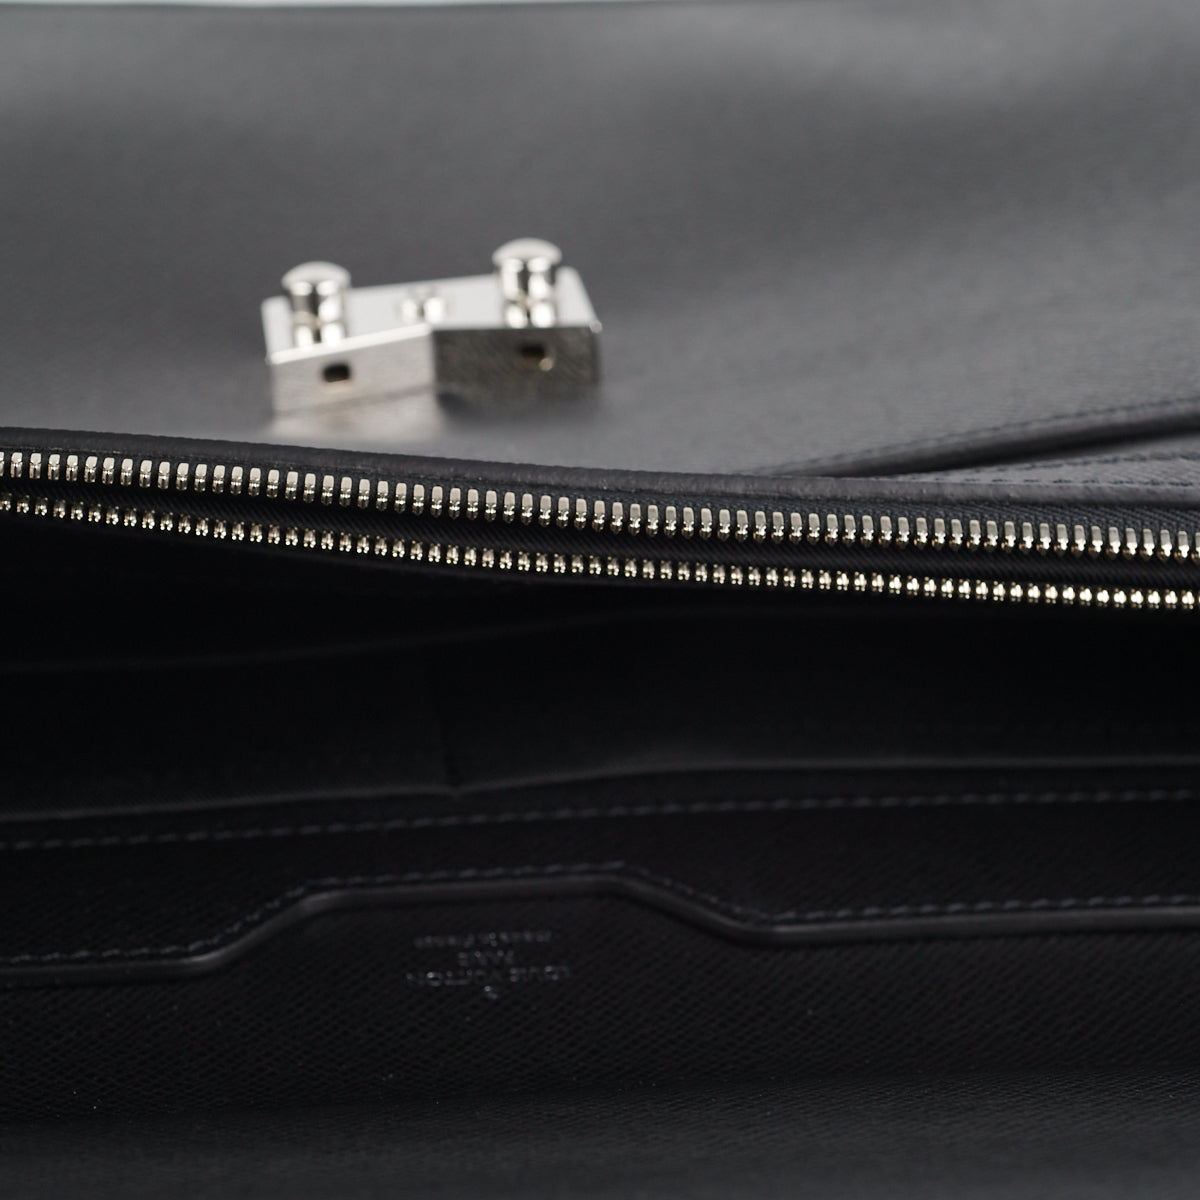 Louis Vuitton, Taiga Leather 'Neo Robusto' Briefcase. - Bukowskis